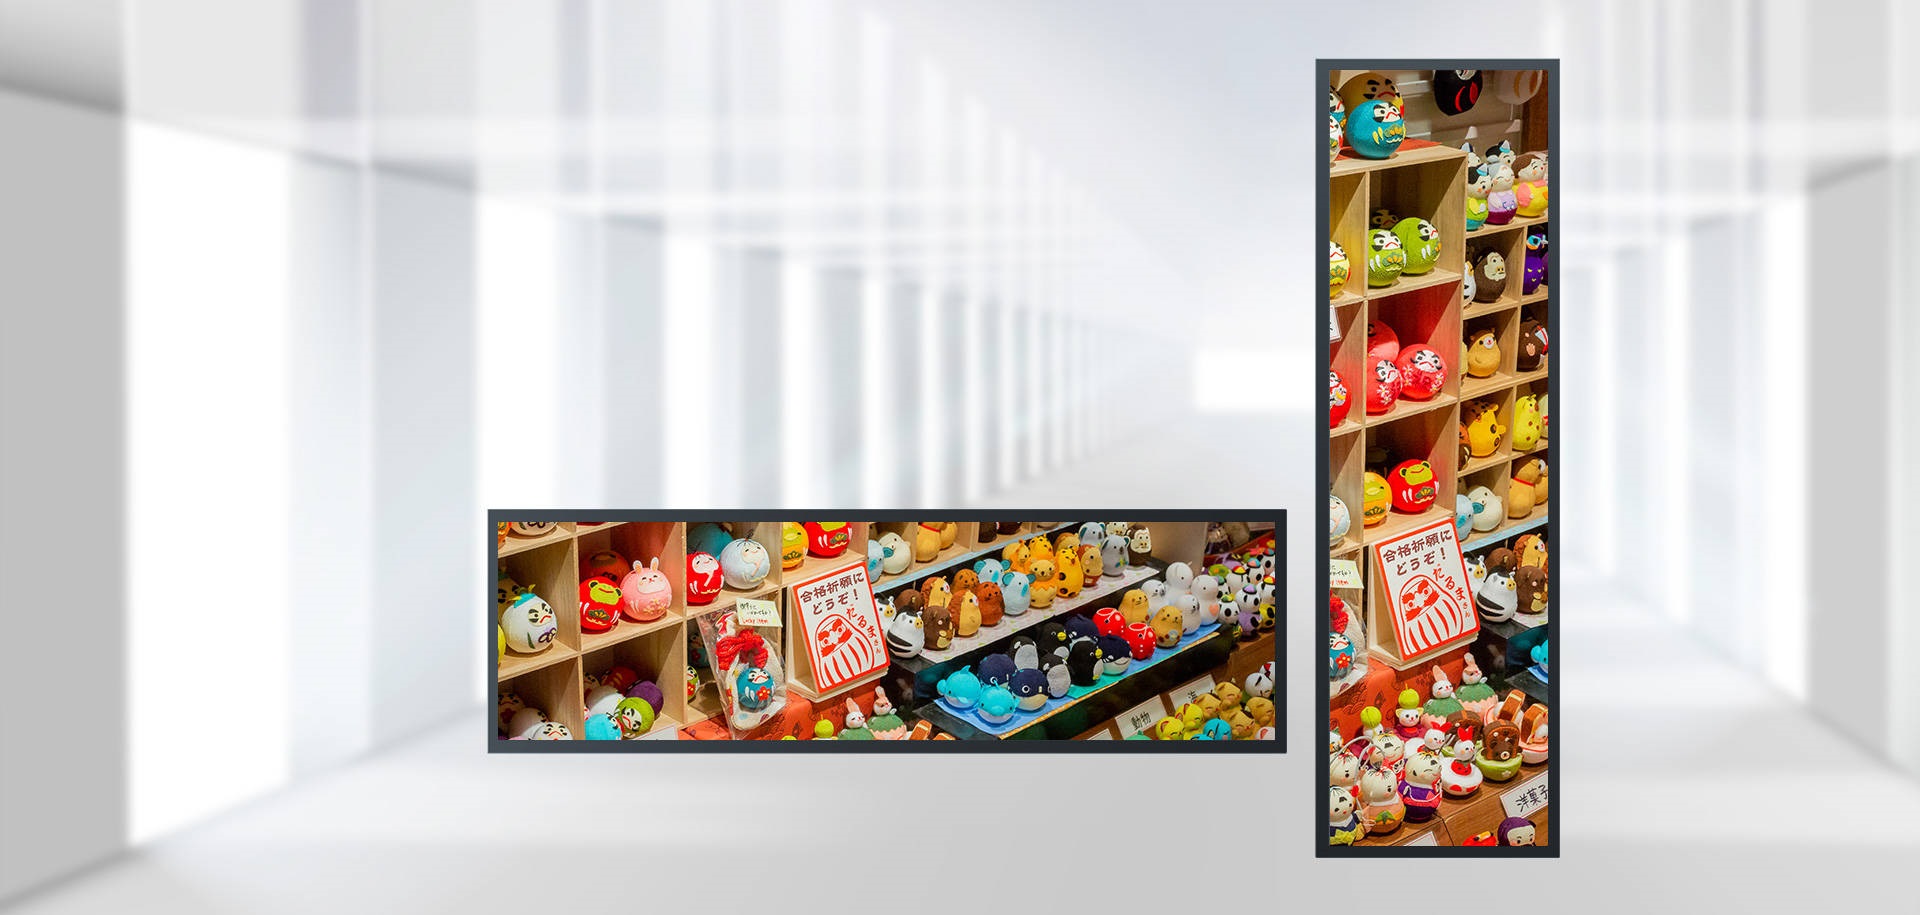 Aplikačná hodnota reklamného prehrávača s pruhmi LCD vo veľkom supermarkete